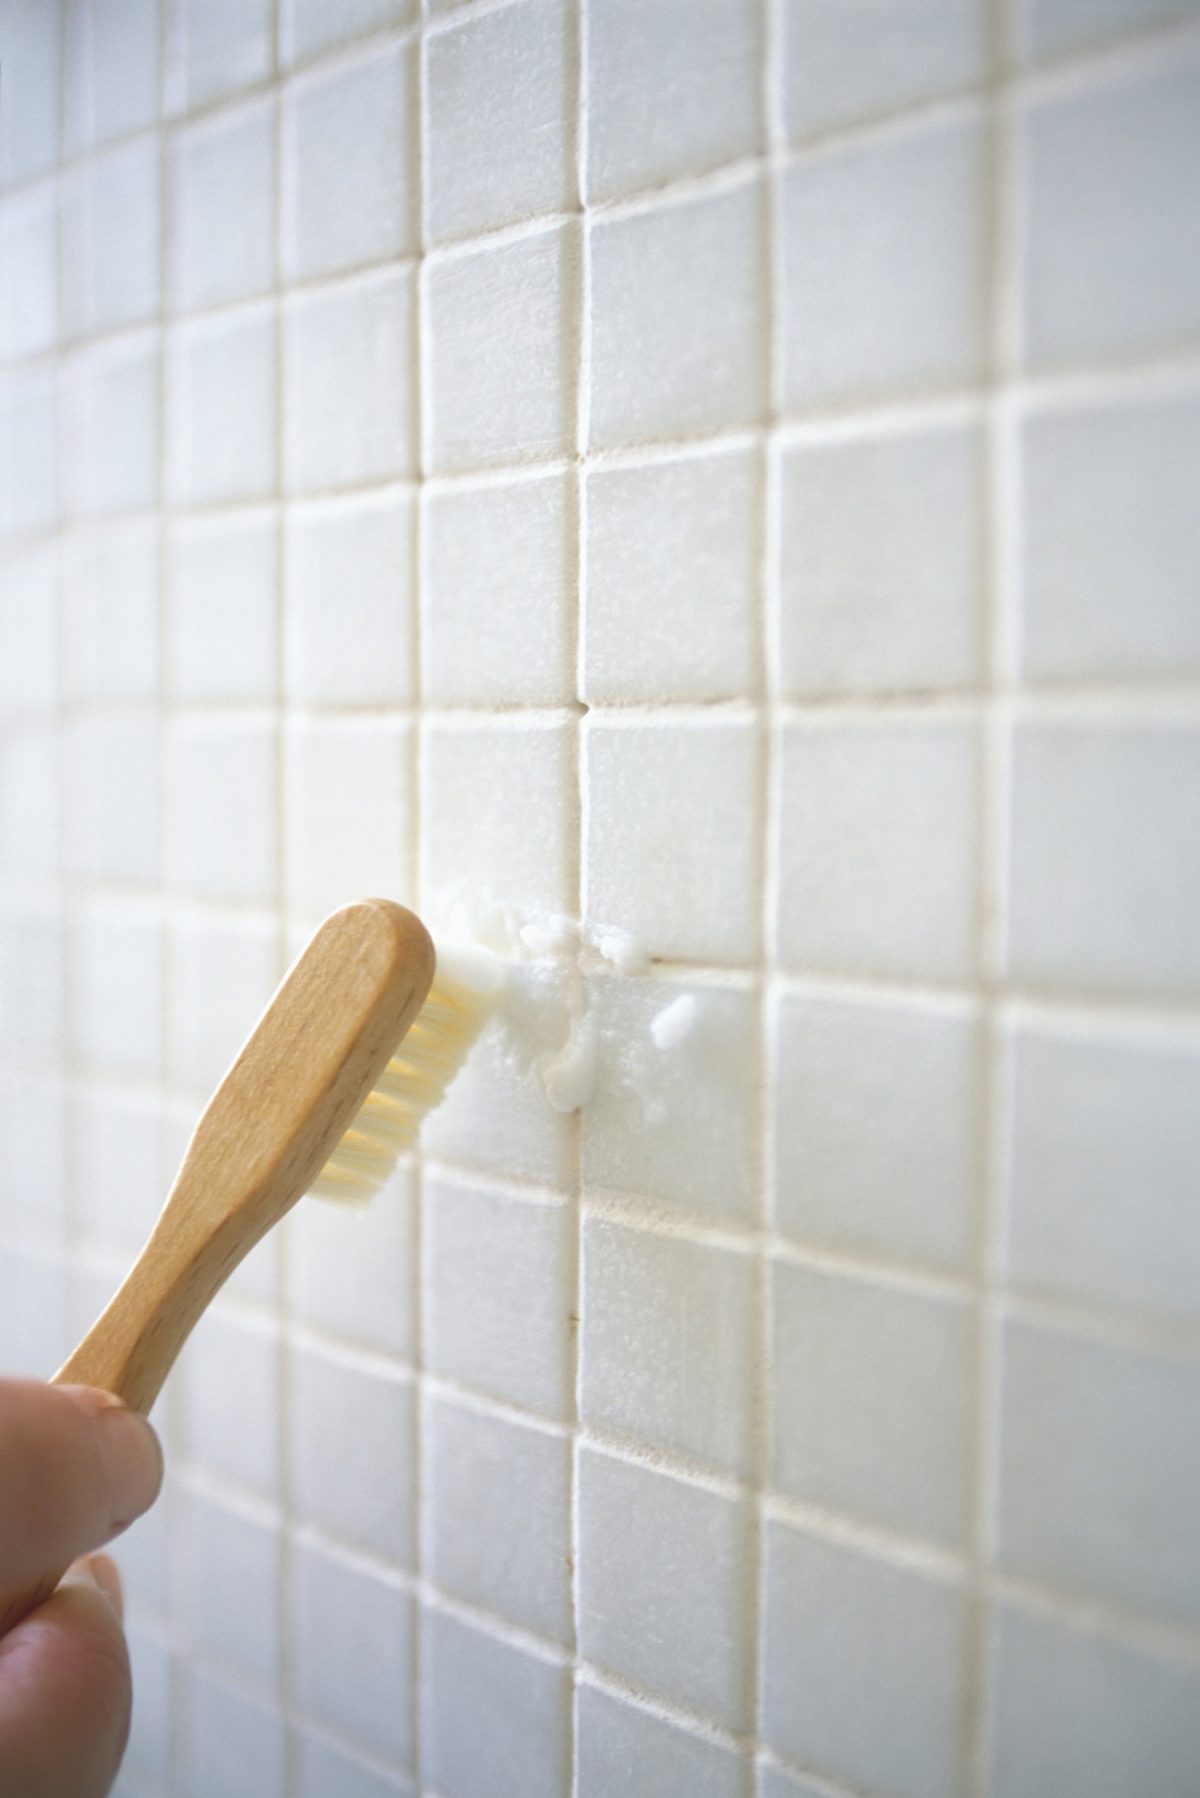 Cómo usar el limpiador de baños y azulejos?